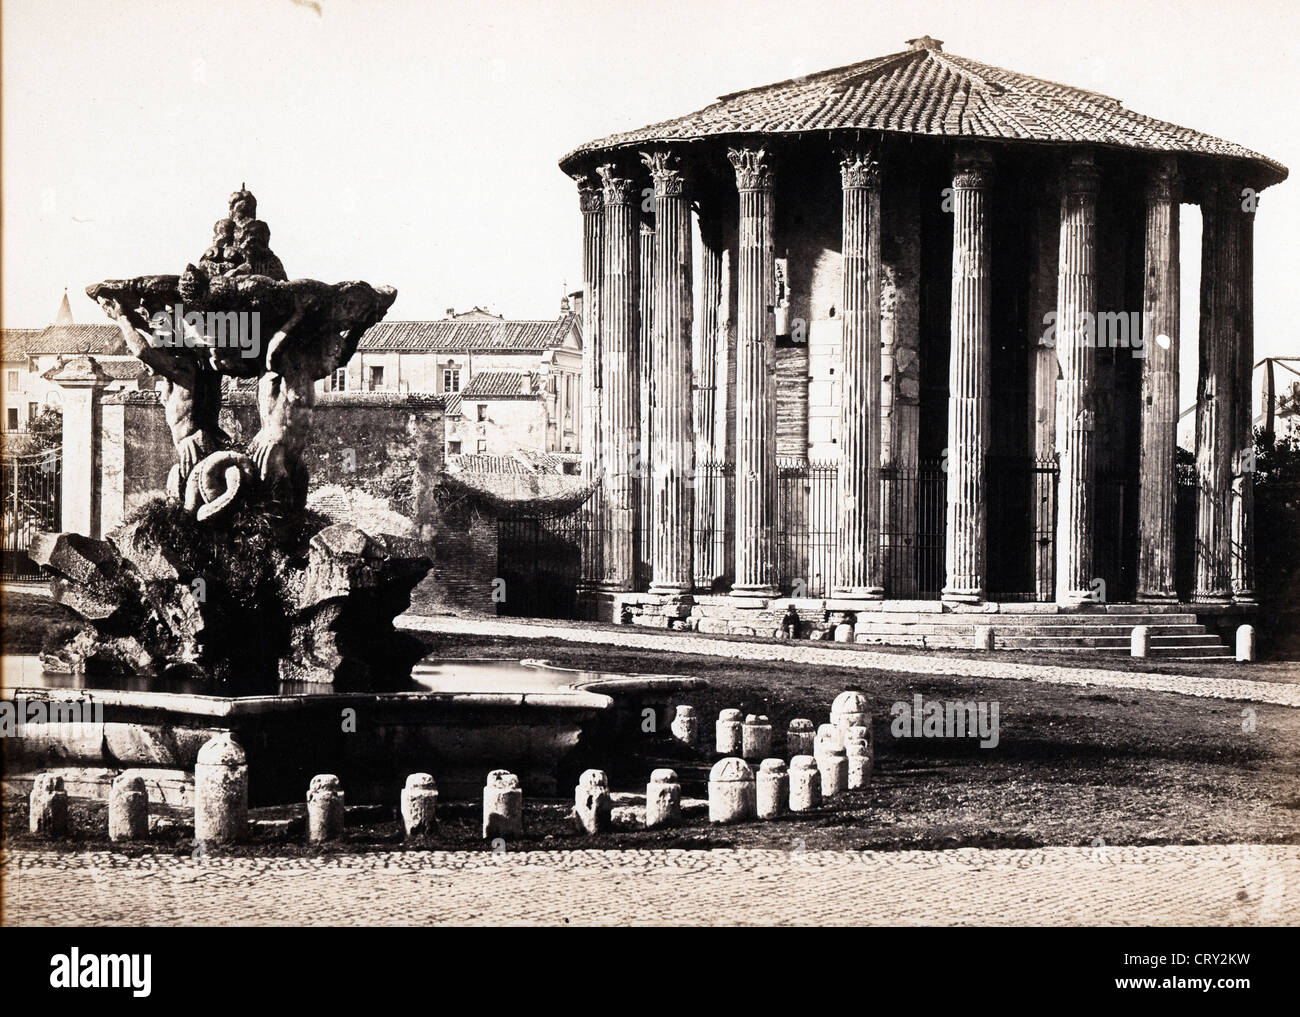 Tempio di Vesta, Roma, ca 1850, by Tommaso Cuccioni Stock Photo